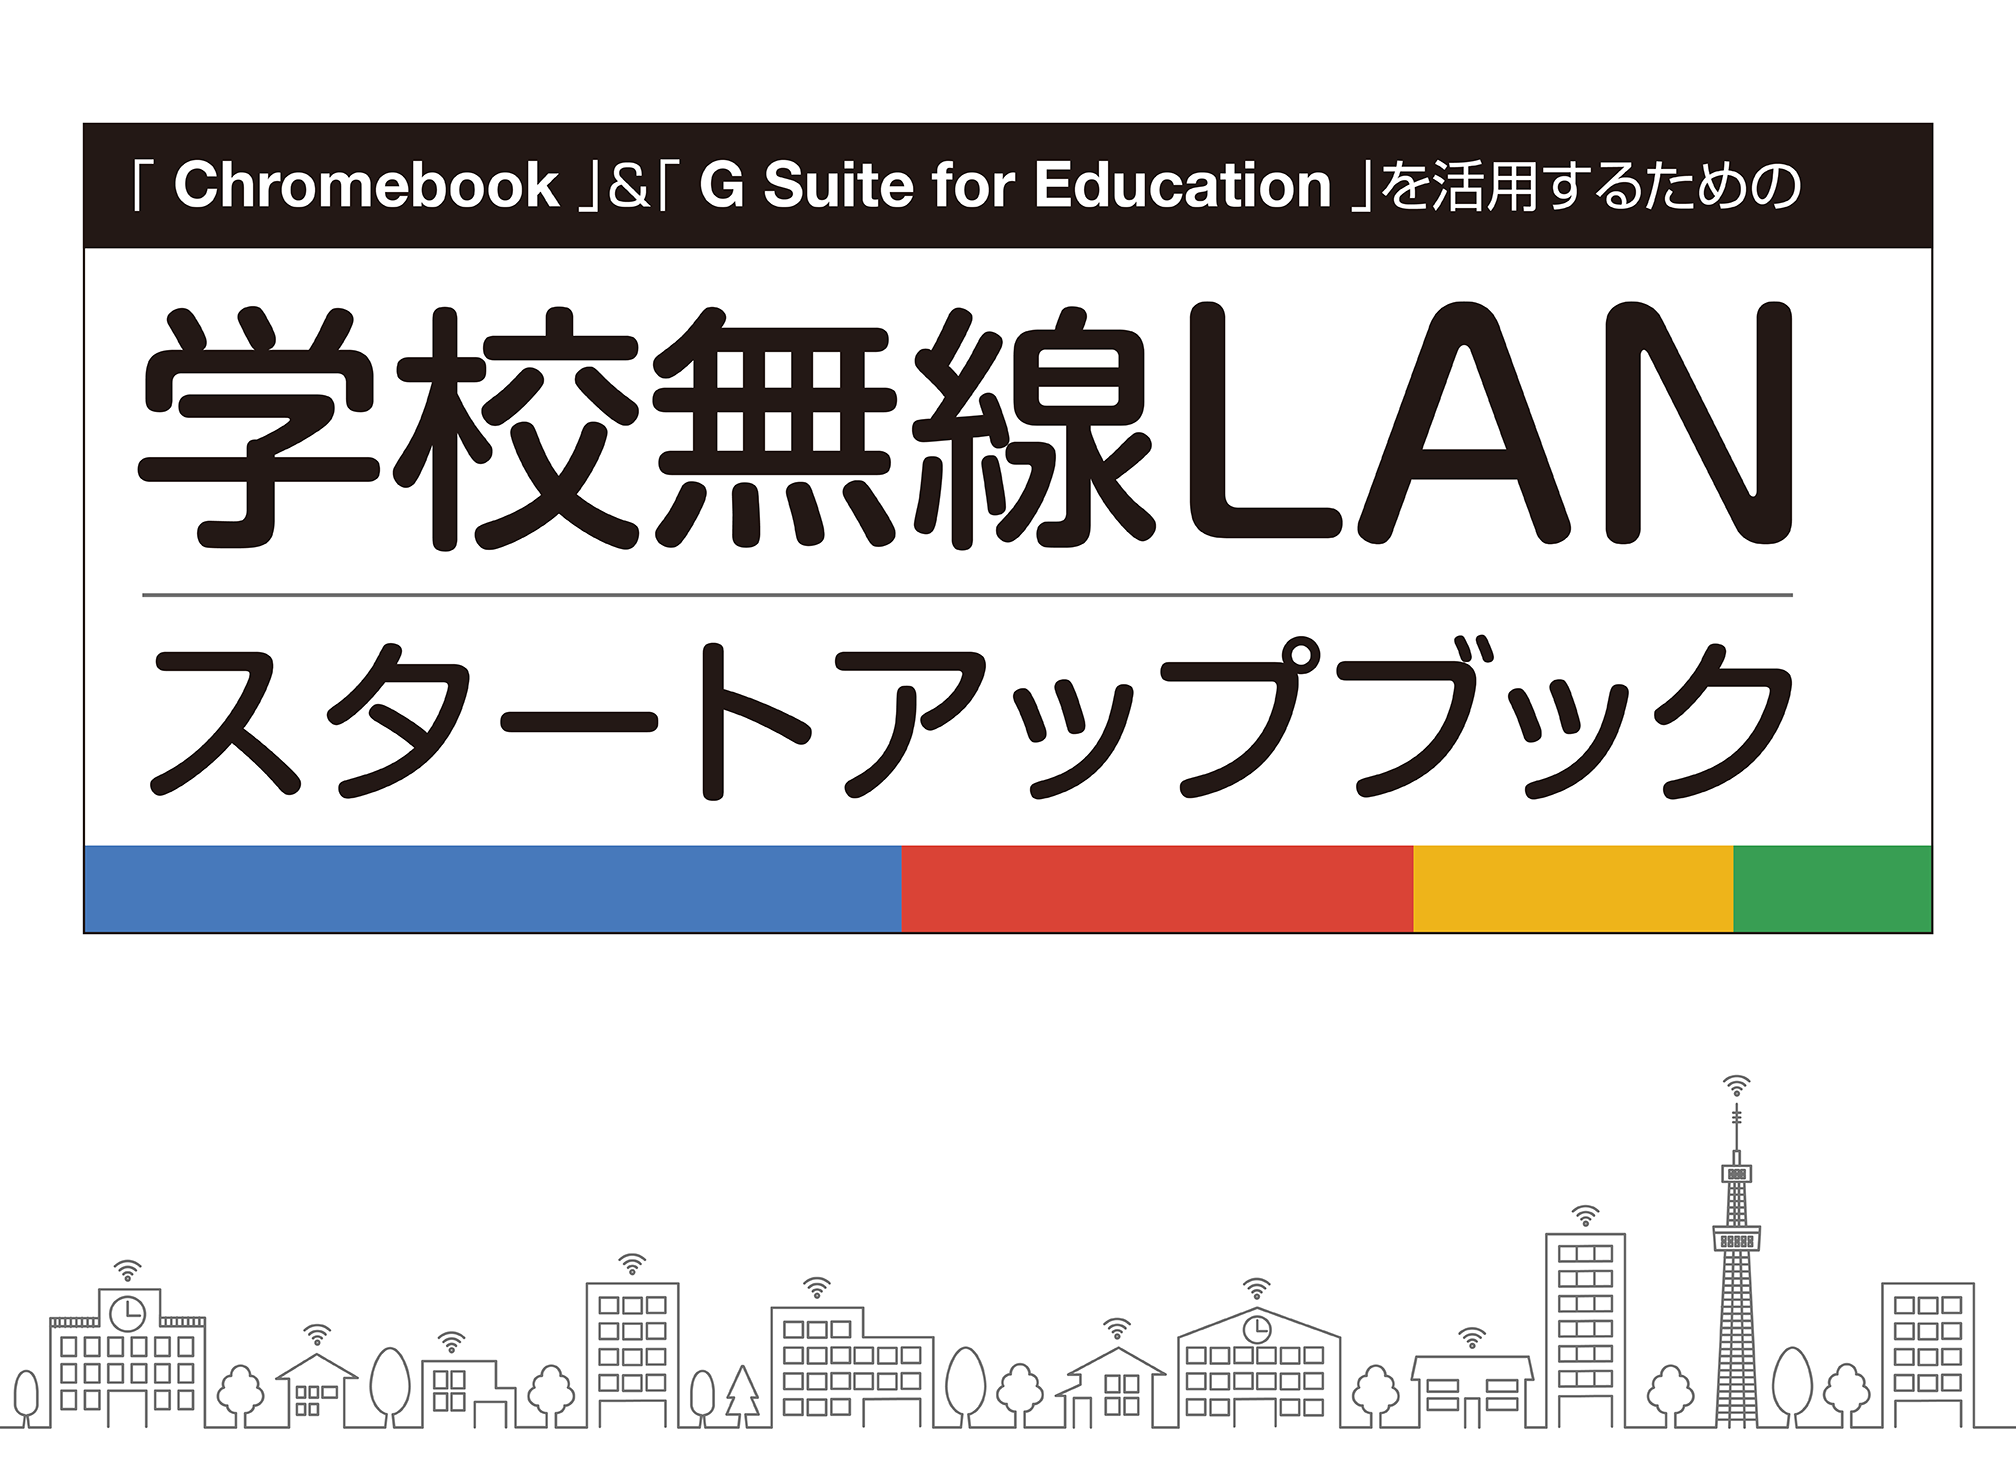 フルノシステムズ、Google の教育関連システムと学校無線LANについて解説する教育ICTスタートアップブックを公開